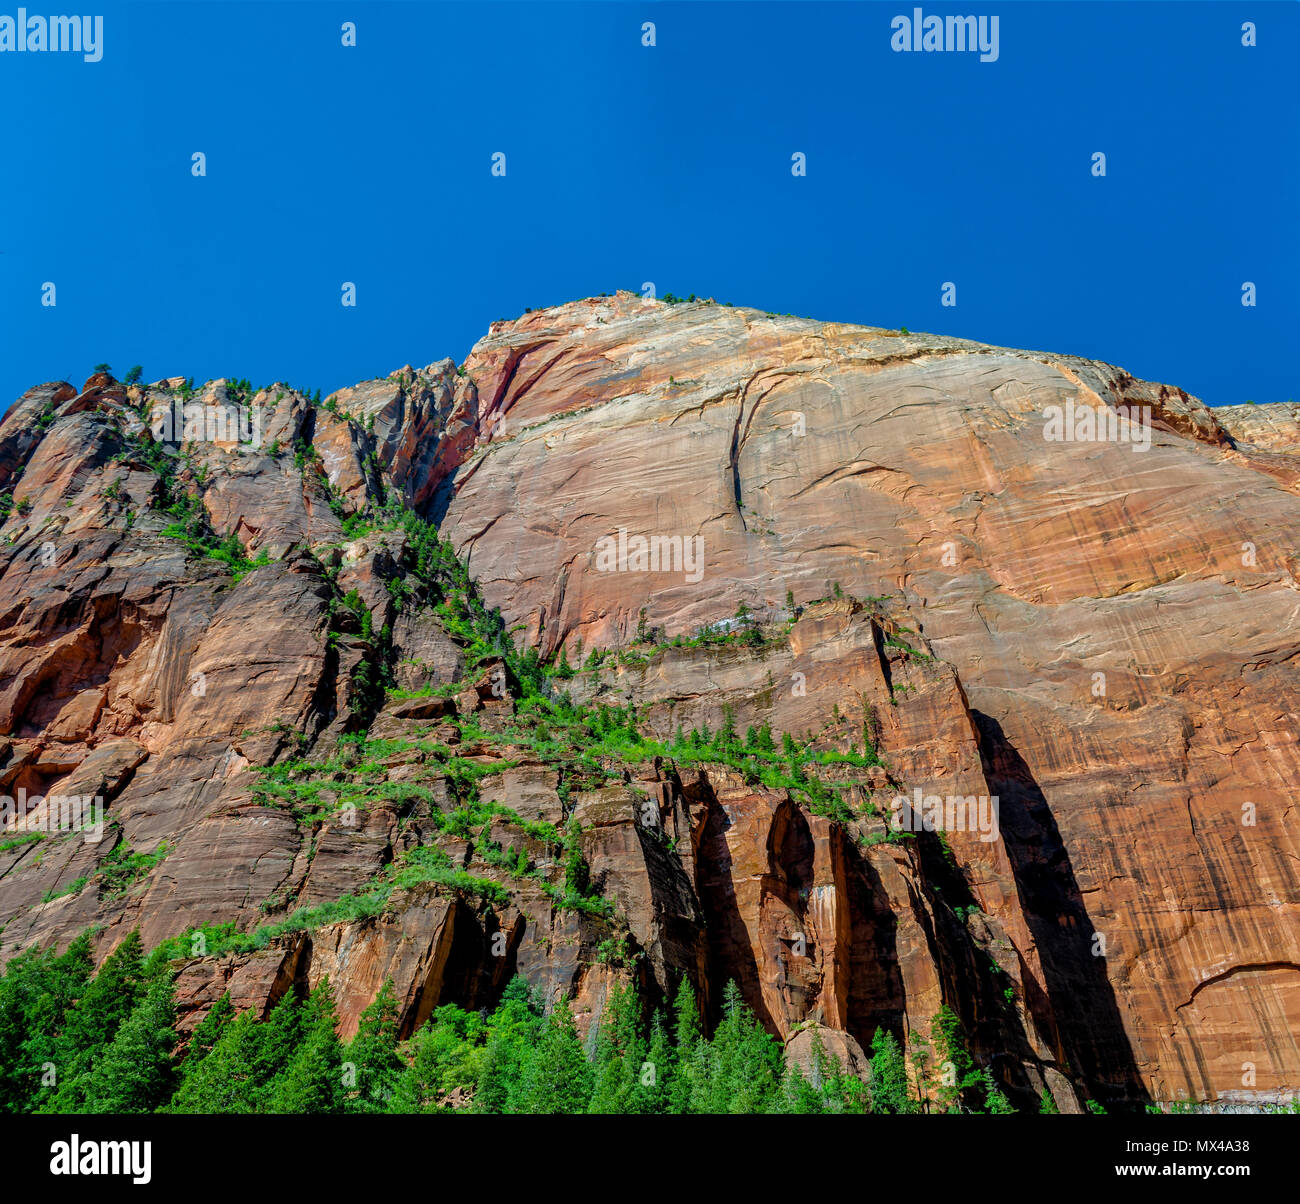 Hohe Solid Rock Mountain mit grüner Vegetation wächst unter strahlend blauem Himmel. Stockfoto